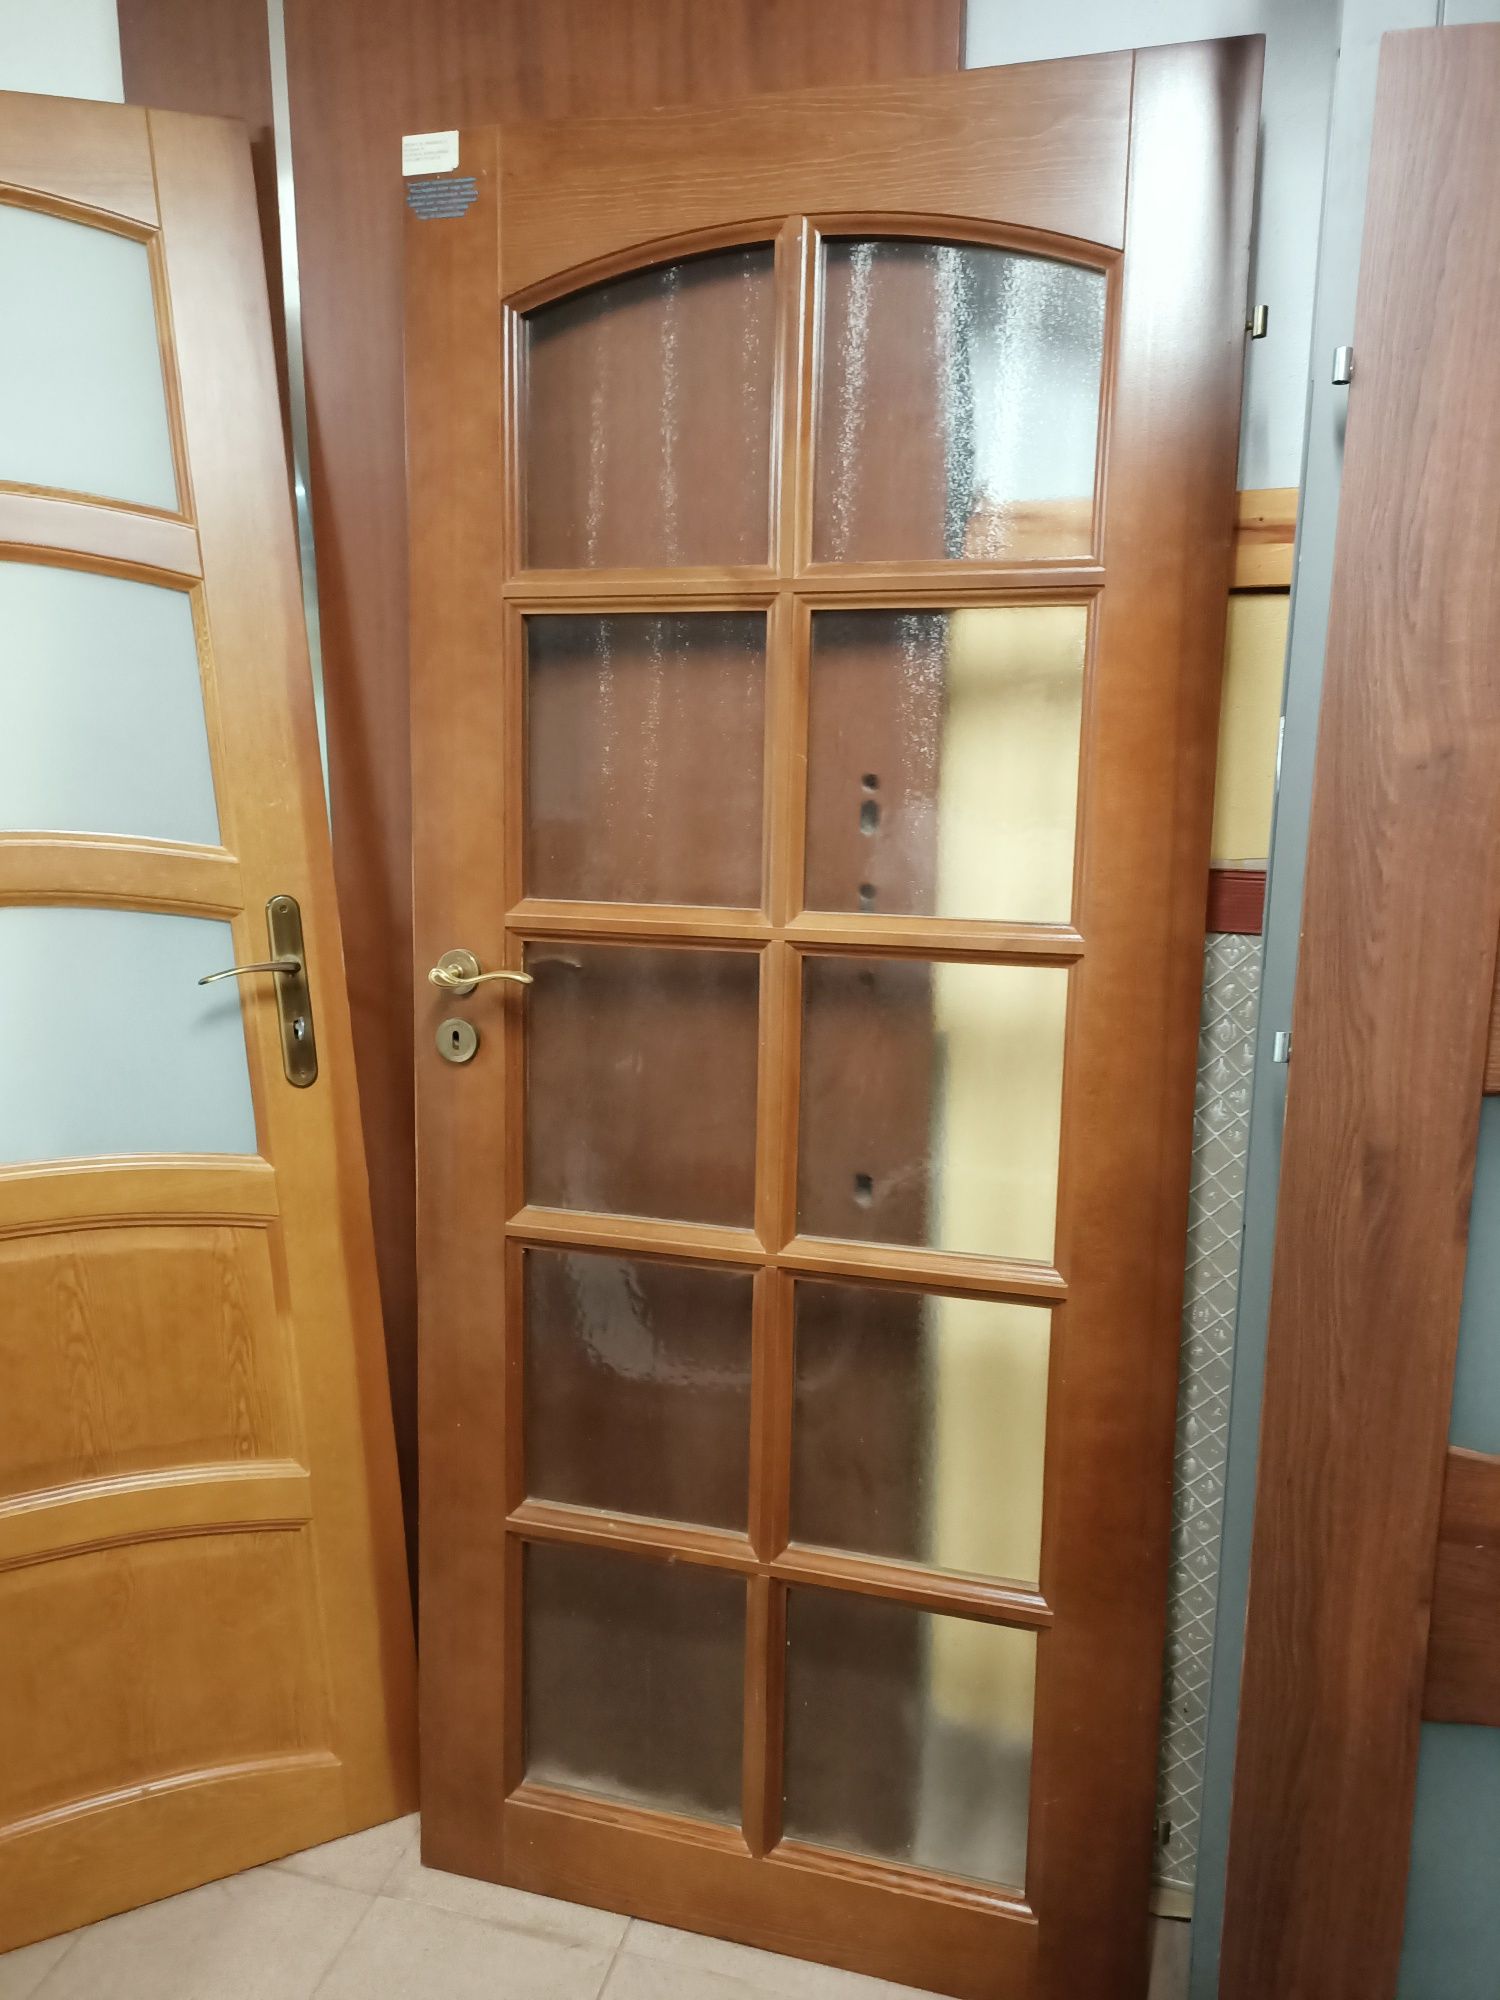 Drzwi wewnetrzne(skrzydlo) drewno   szerokosc 80 cm wys 185/200 cm